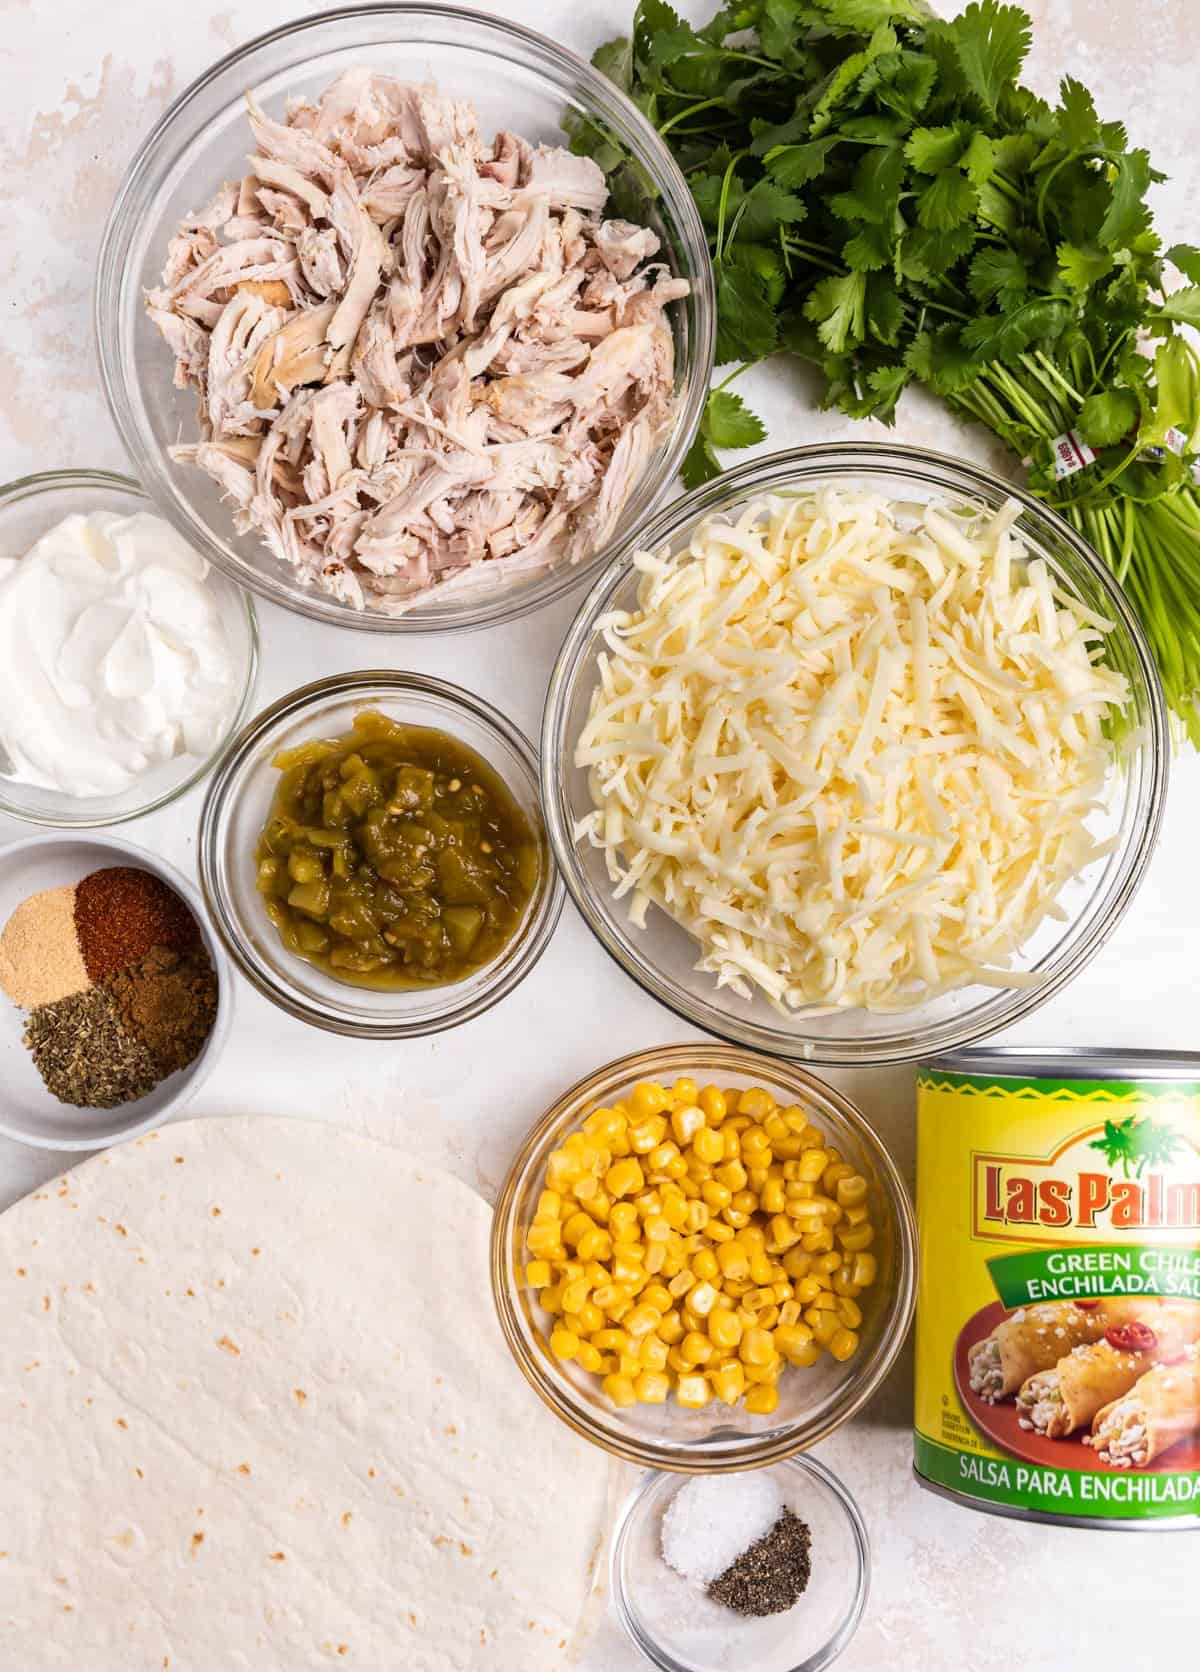 Ingredients to make green chicken enchiladas on counter.